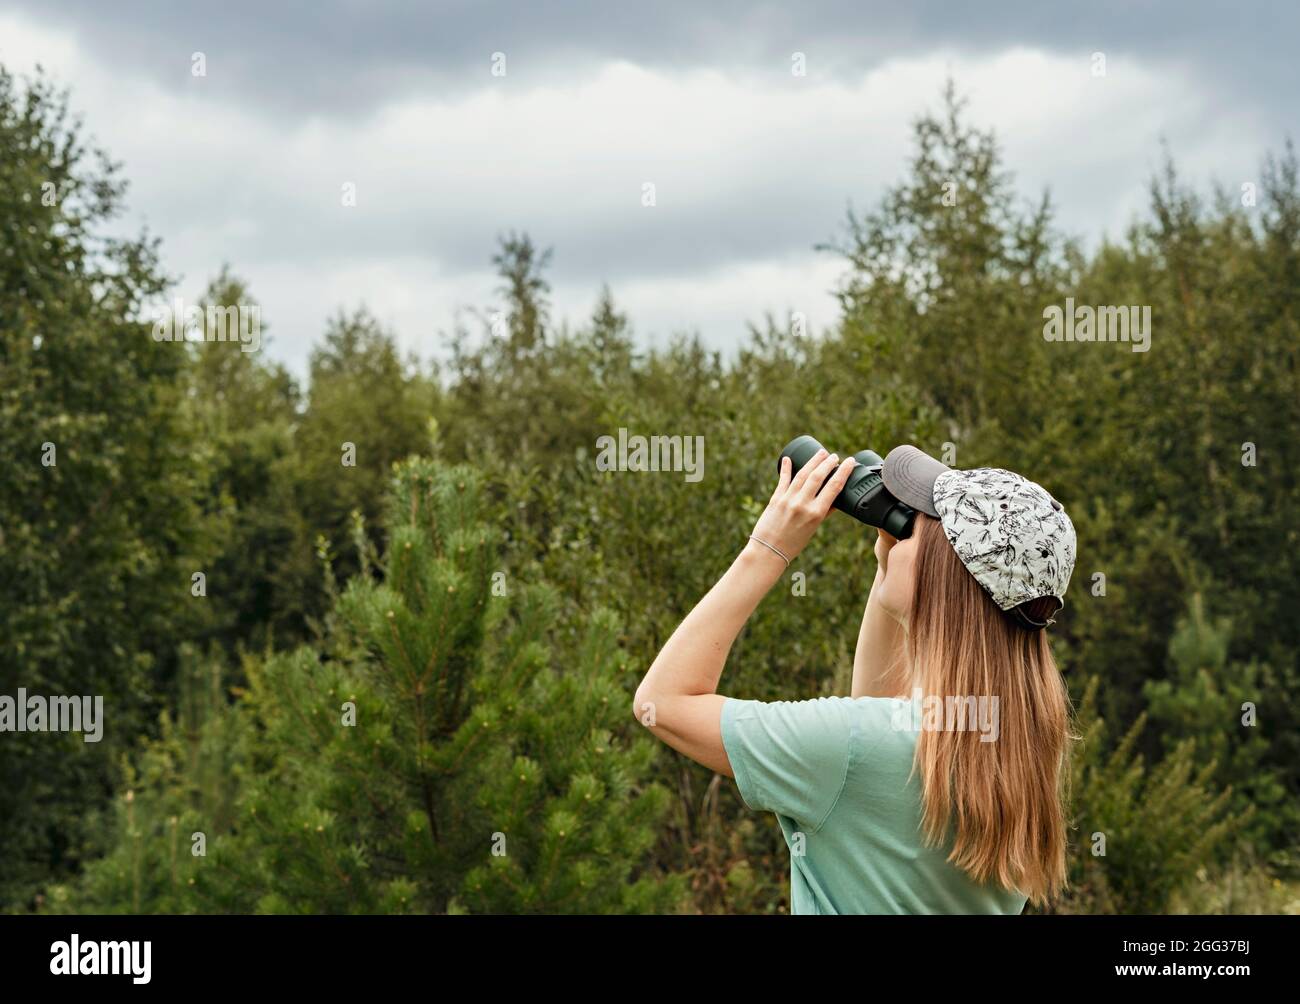 Joven mujer rubia observador de aves en gorra y azul mirando a través de binoculares en cielo nublado en verano bosque ornitológico investigación Birdwatching, zoolog Foto de stock